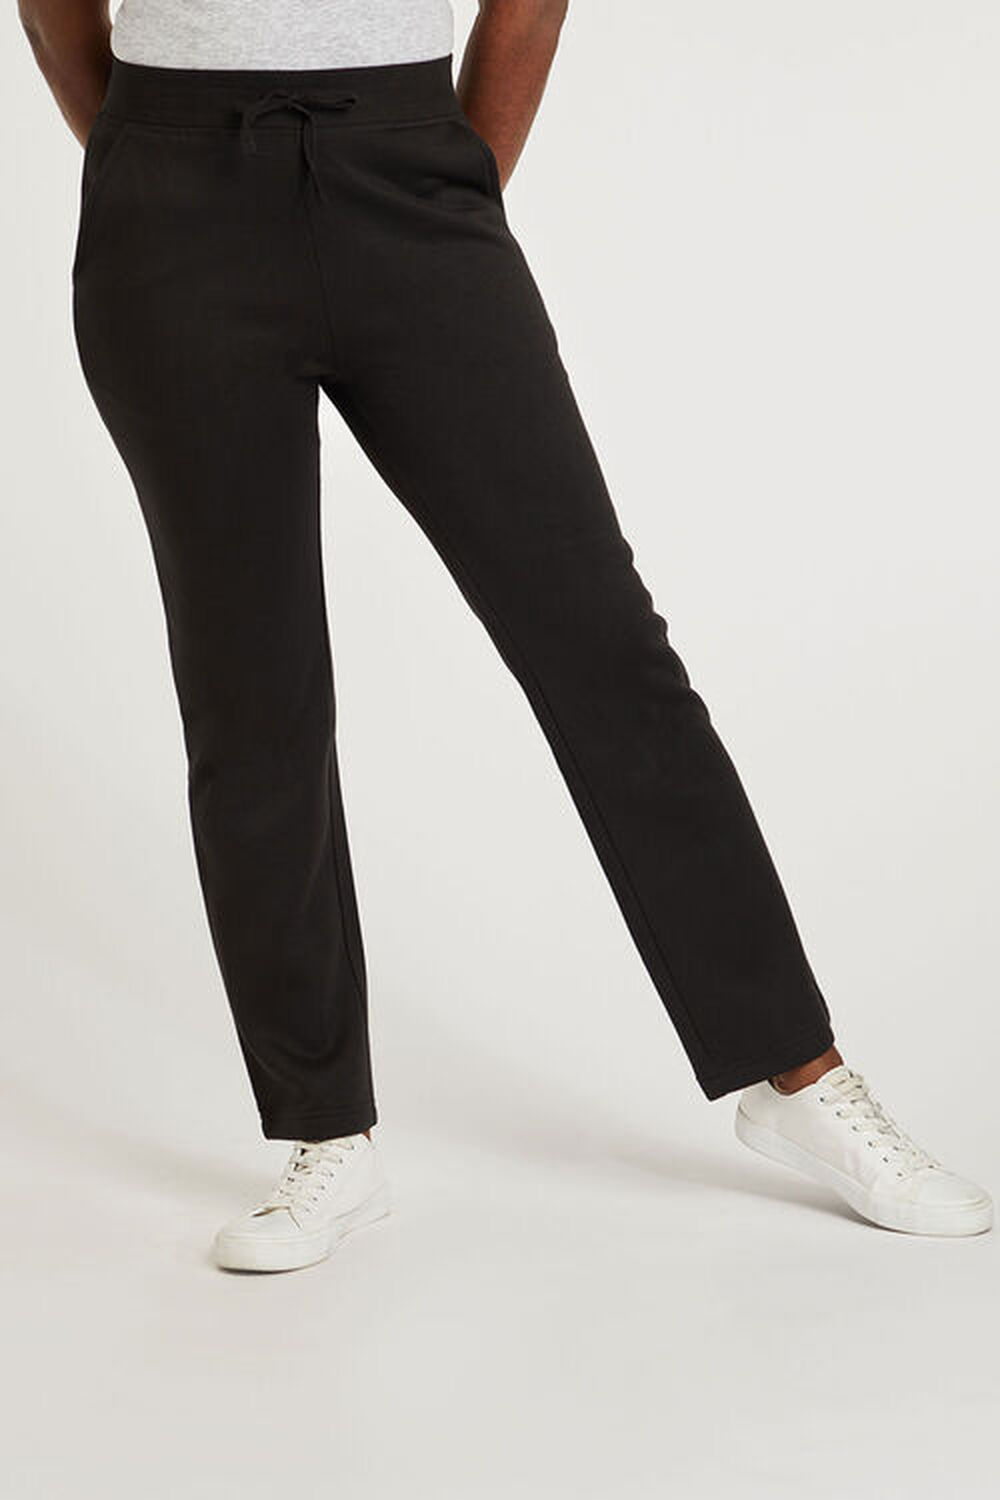 Bonmarche Black Jogging Pants, Size: 10